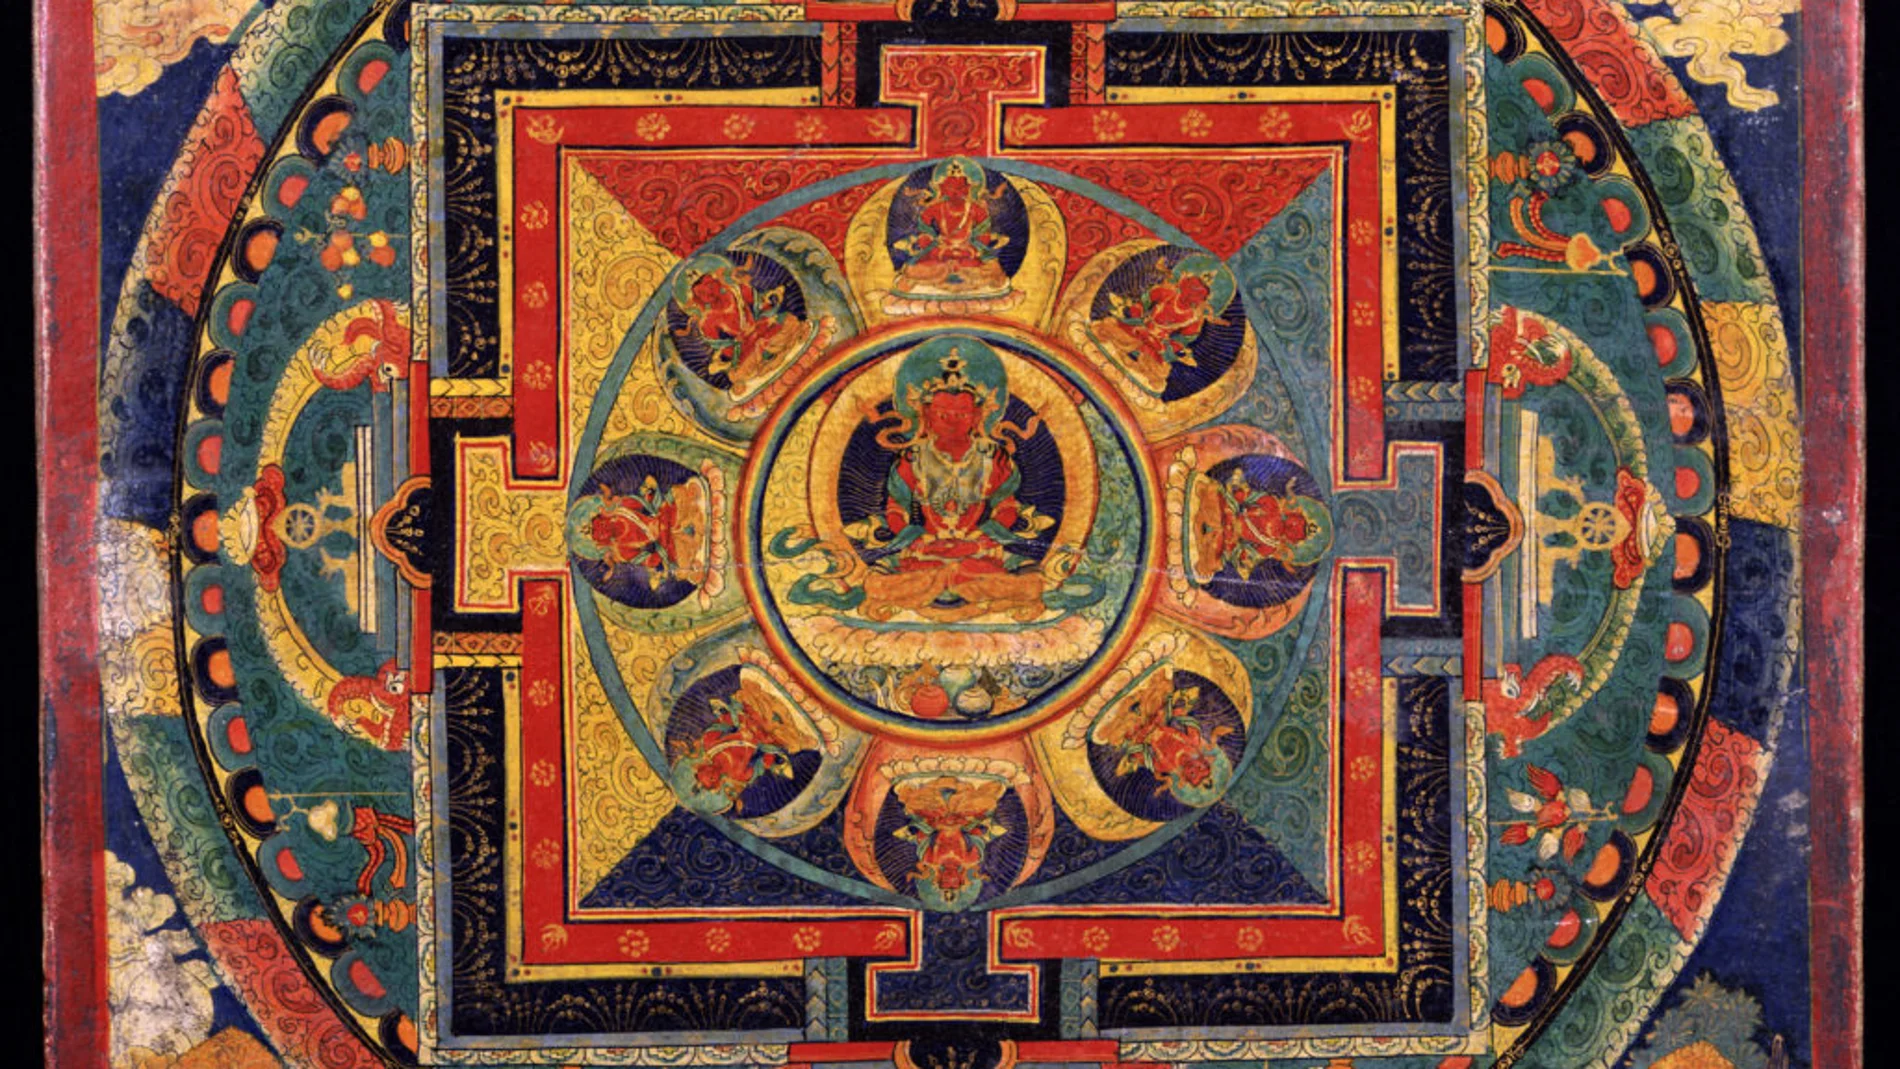 Un mandala (como el de la imagen) es una representación compleja del mundo en donde se representan distintos aspectos del budismo